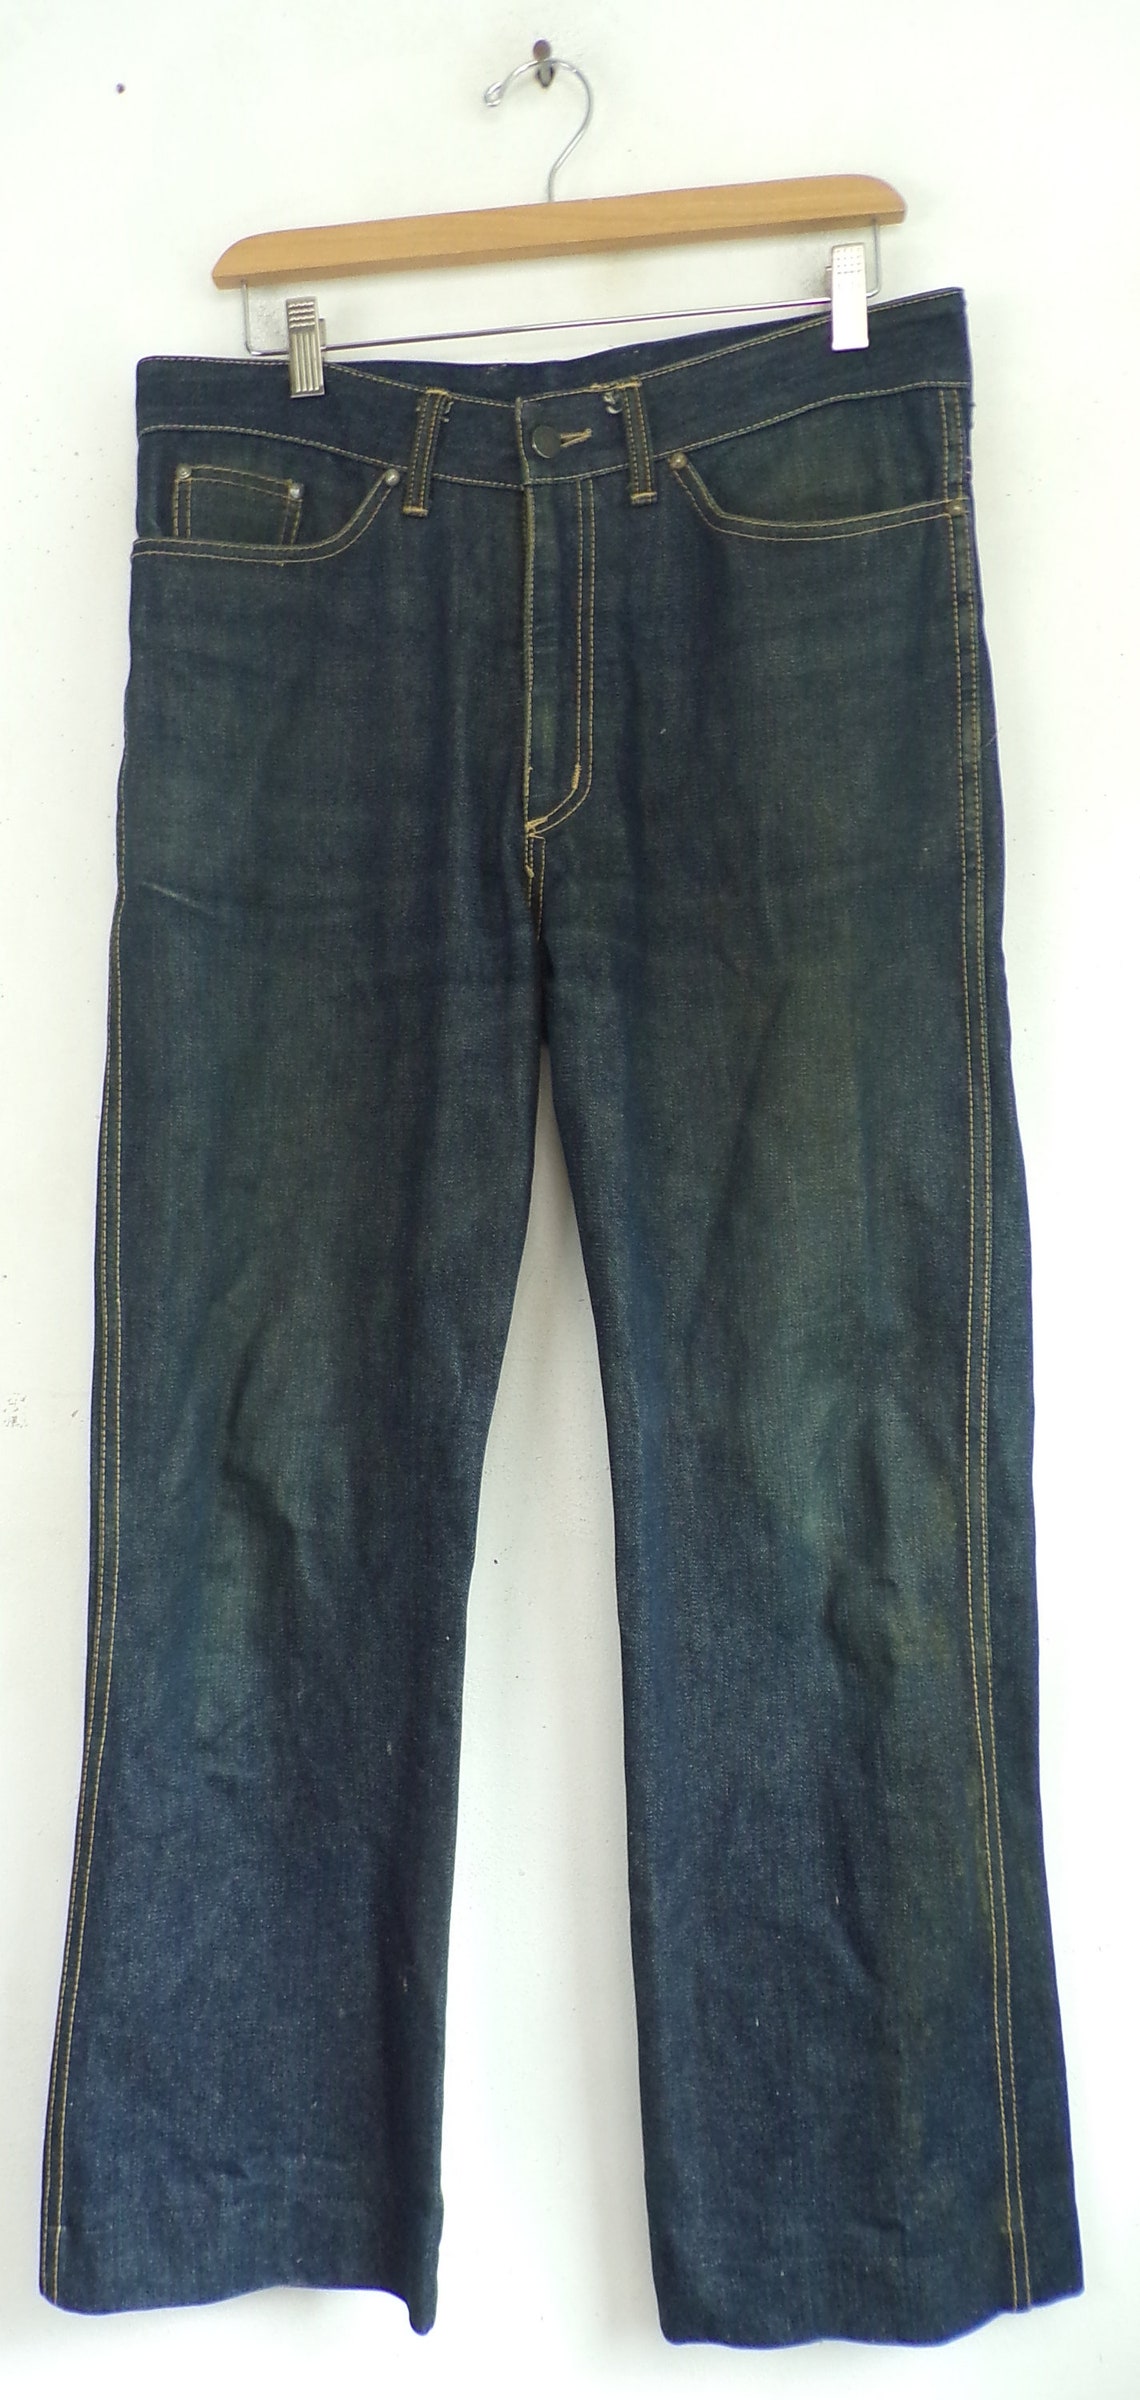 Vintage Mens Dark Wash Jeans Sasson Brand 34 Waist Jeans | Etsy